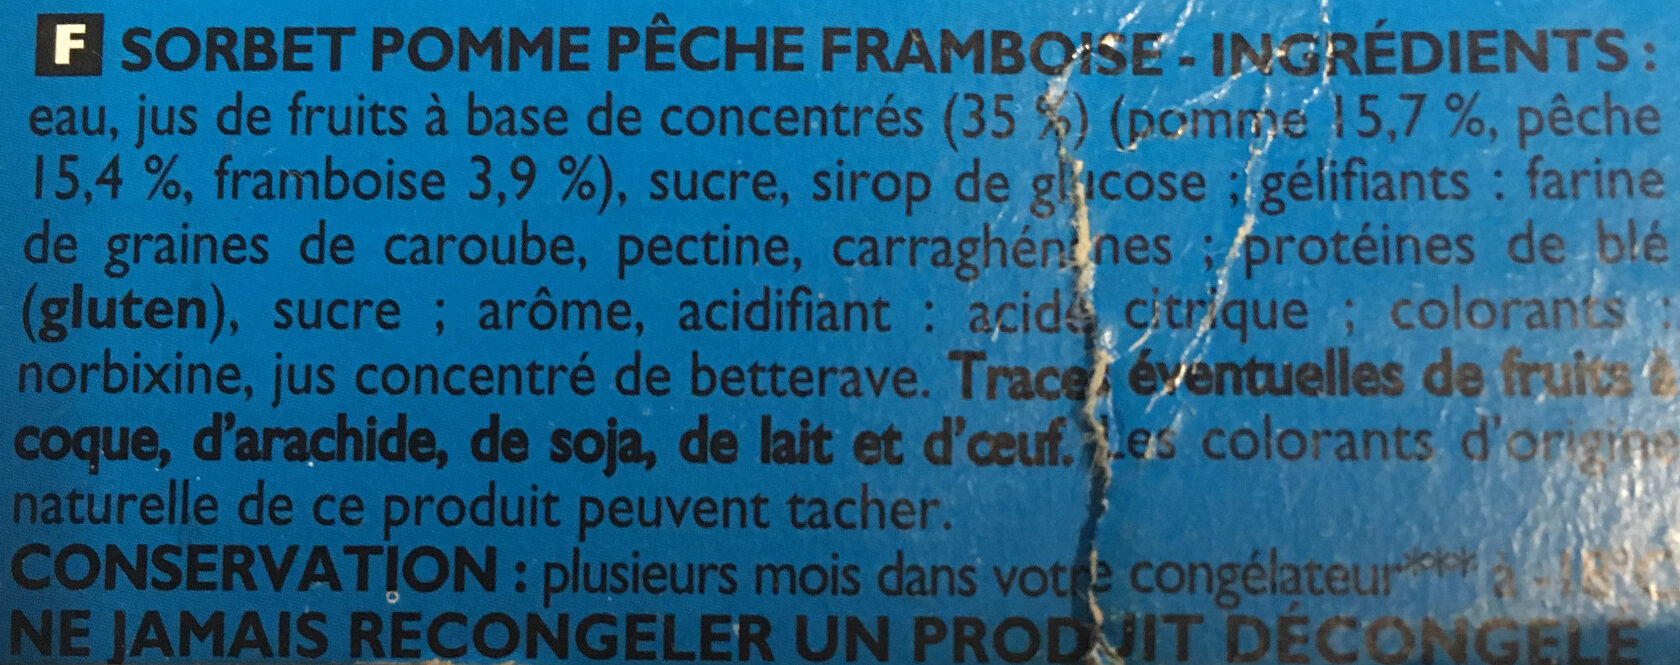 Sorbet Pêche Pomme Framboise - Ingrédients